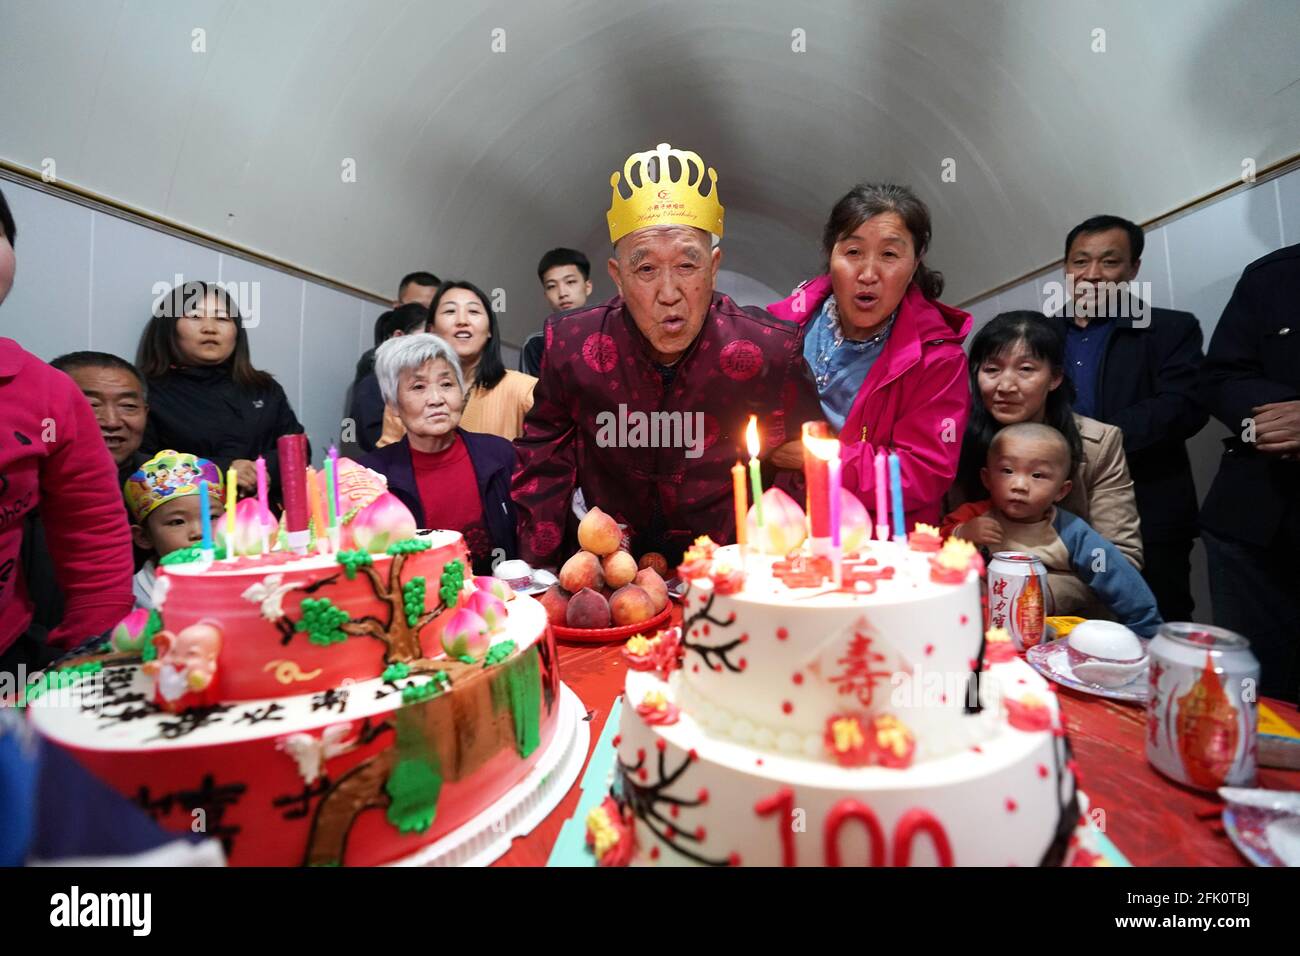 (210427) -- TAIYUAN, 27 aprile 2021 (Xinhua) -- Hu Zaizhong soffia candele sulla sua torta di compleanno al suo banchetto di compleanno al villaggio di Xuejiawan, nella contea di Liulin, nella città di Lyuliang, nella provincia di Shanxi della Cina del nord, il 24 aprile 2021. HU Zaizhong, che ha appena compiuto 100 anni, ricorda vividamente i suoi desideri in diverse fasi della sua vita: Avere cibo e vestiti decenti nei suoi primi giorni, insegnare quanti più alunni possibile nella sua prima età, e godere di un tempo di qualità con la sua famiglia per gli ultimi anni. Tuttavia, Hu ha fatto un nuovo desiderio prima di soffiare le candele sulla sua torta di compleanno. Tutti i membri della famiglia estesa di Hu Foto Stock